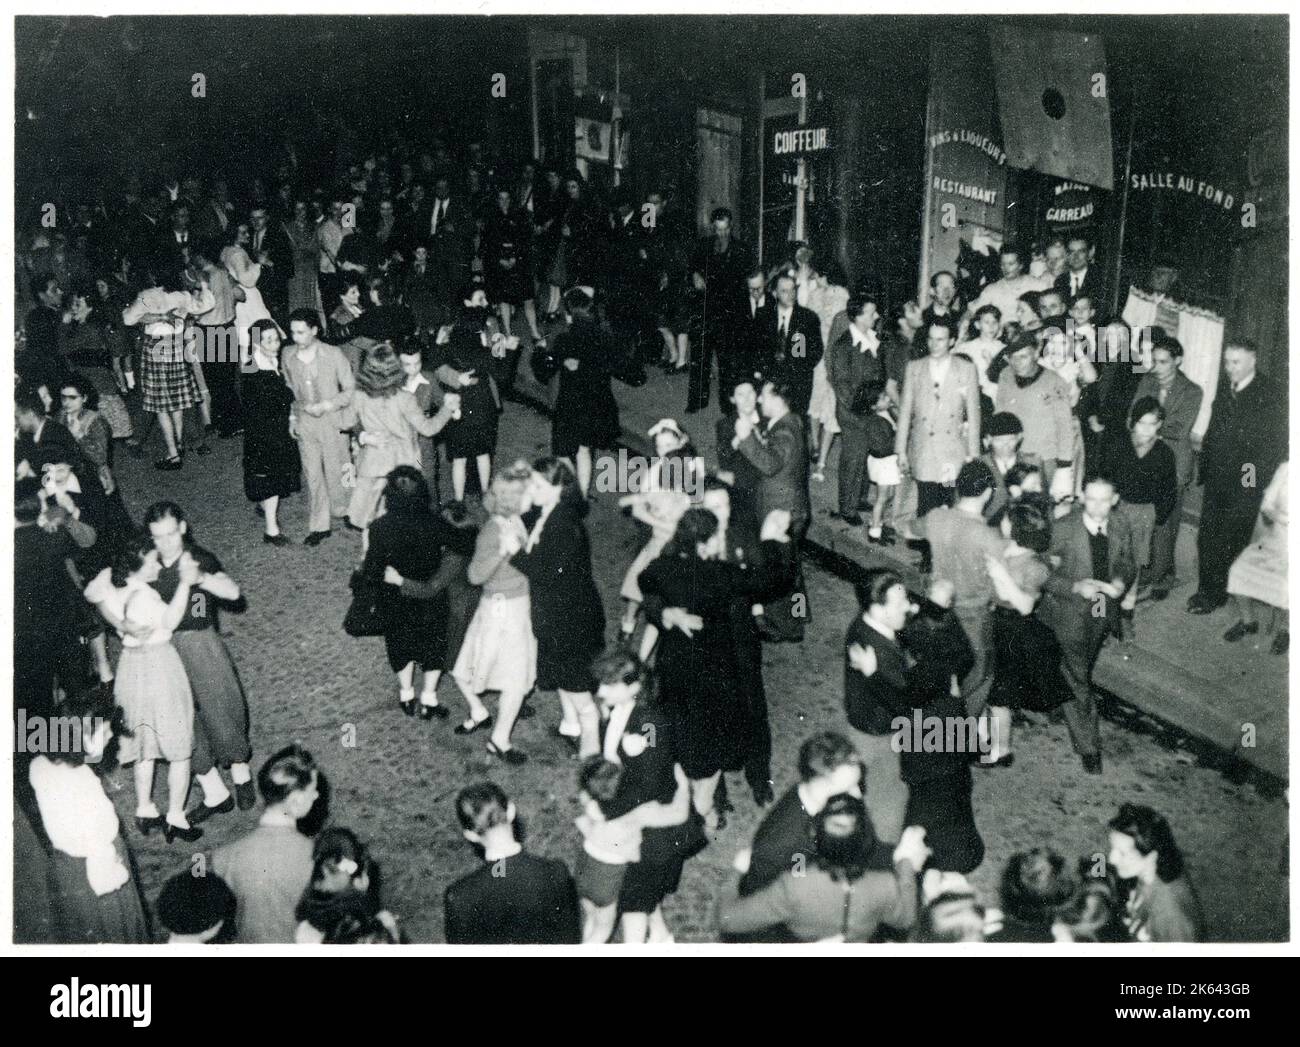 WW2 - celebrazioni della Vittoria a Parigi, Francia - parigini che ballano per strada, illuminati dalla luce dall'abbondanza di fuochi d'artificio multicolore. Foto Stock